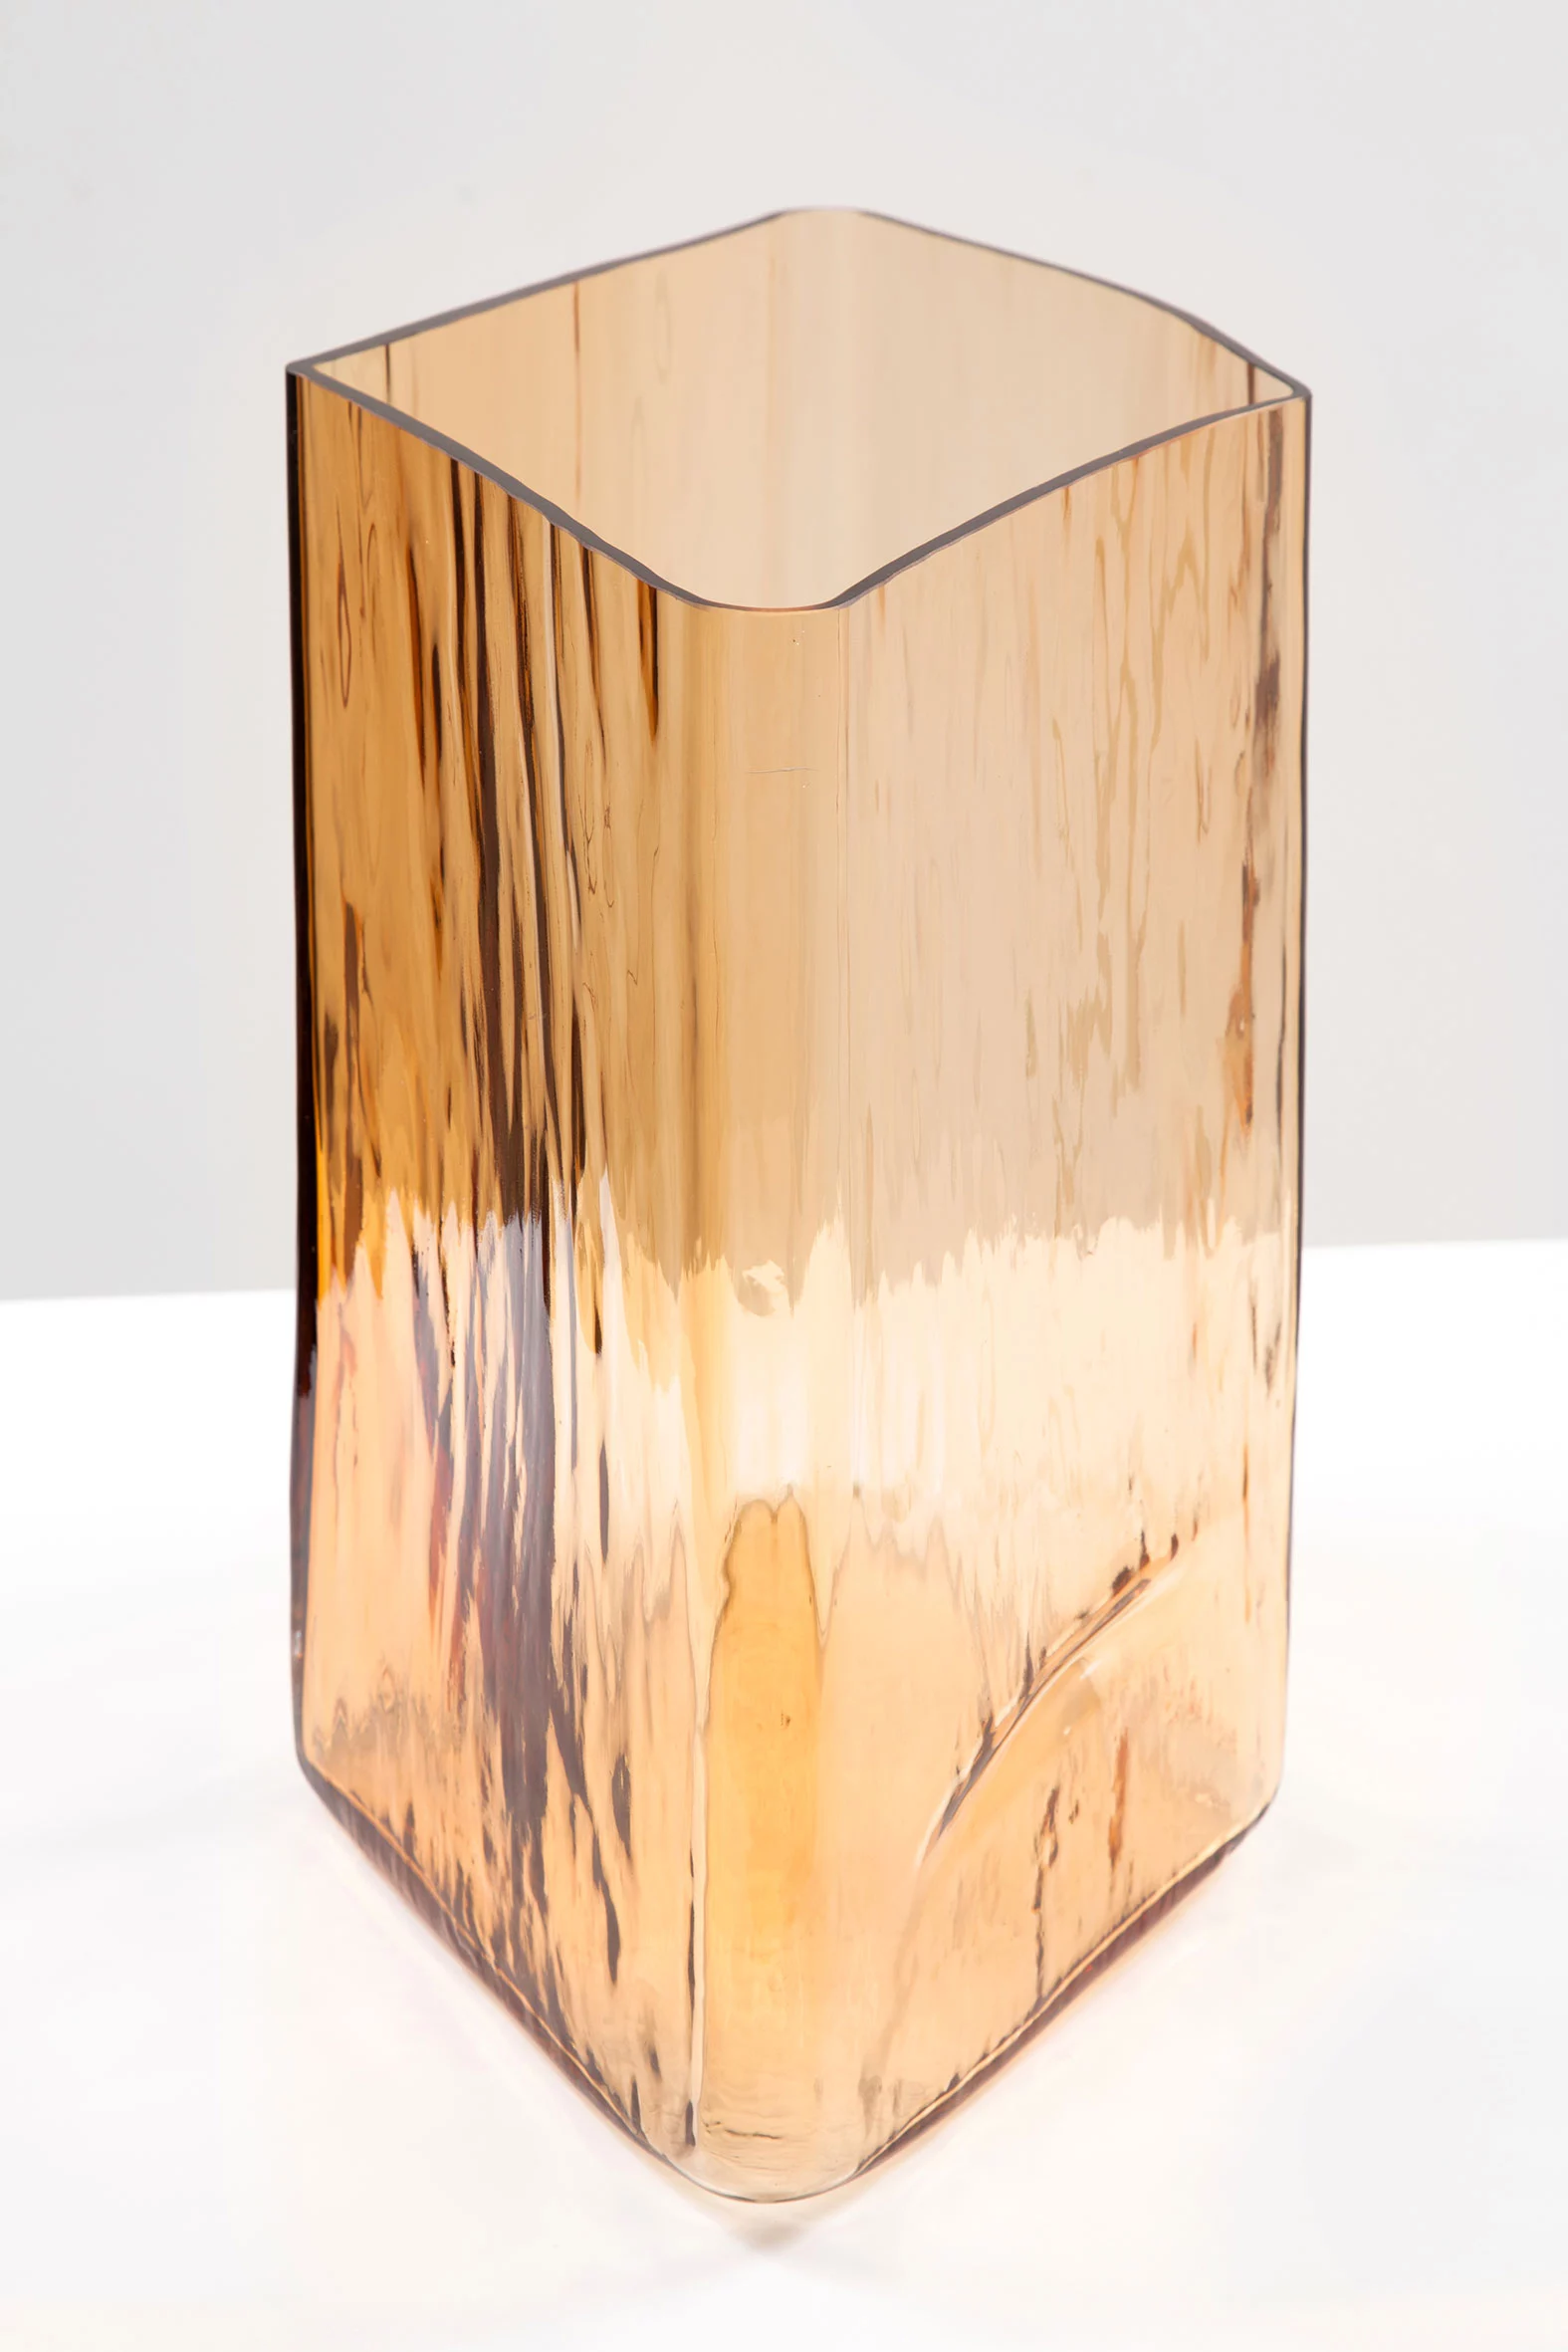 Ruutu brown 34 (#5) - Ronan & Erwan Bouroullec - Vase - Galerie kreo